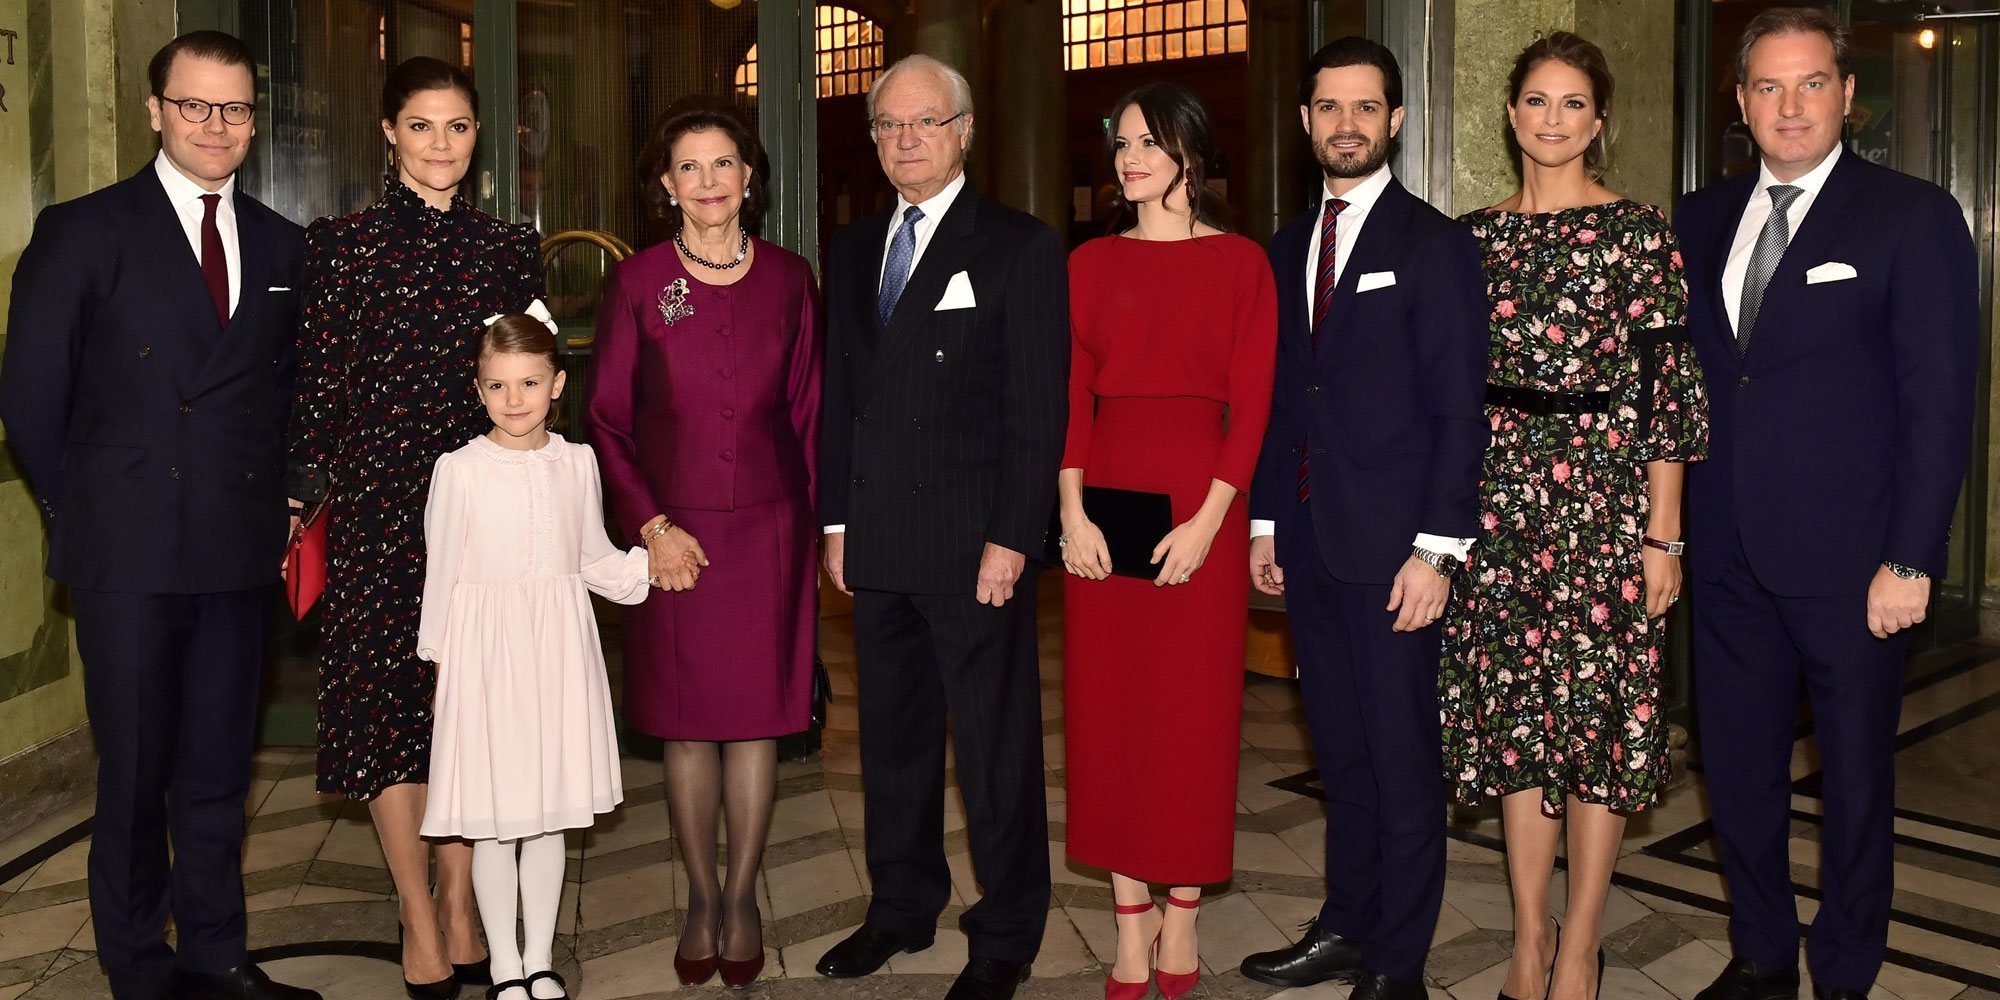 La Familia Real Sueca tendrá su propia 'The Crown' centrada en la vida del Rey Carlos Gustavo